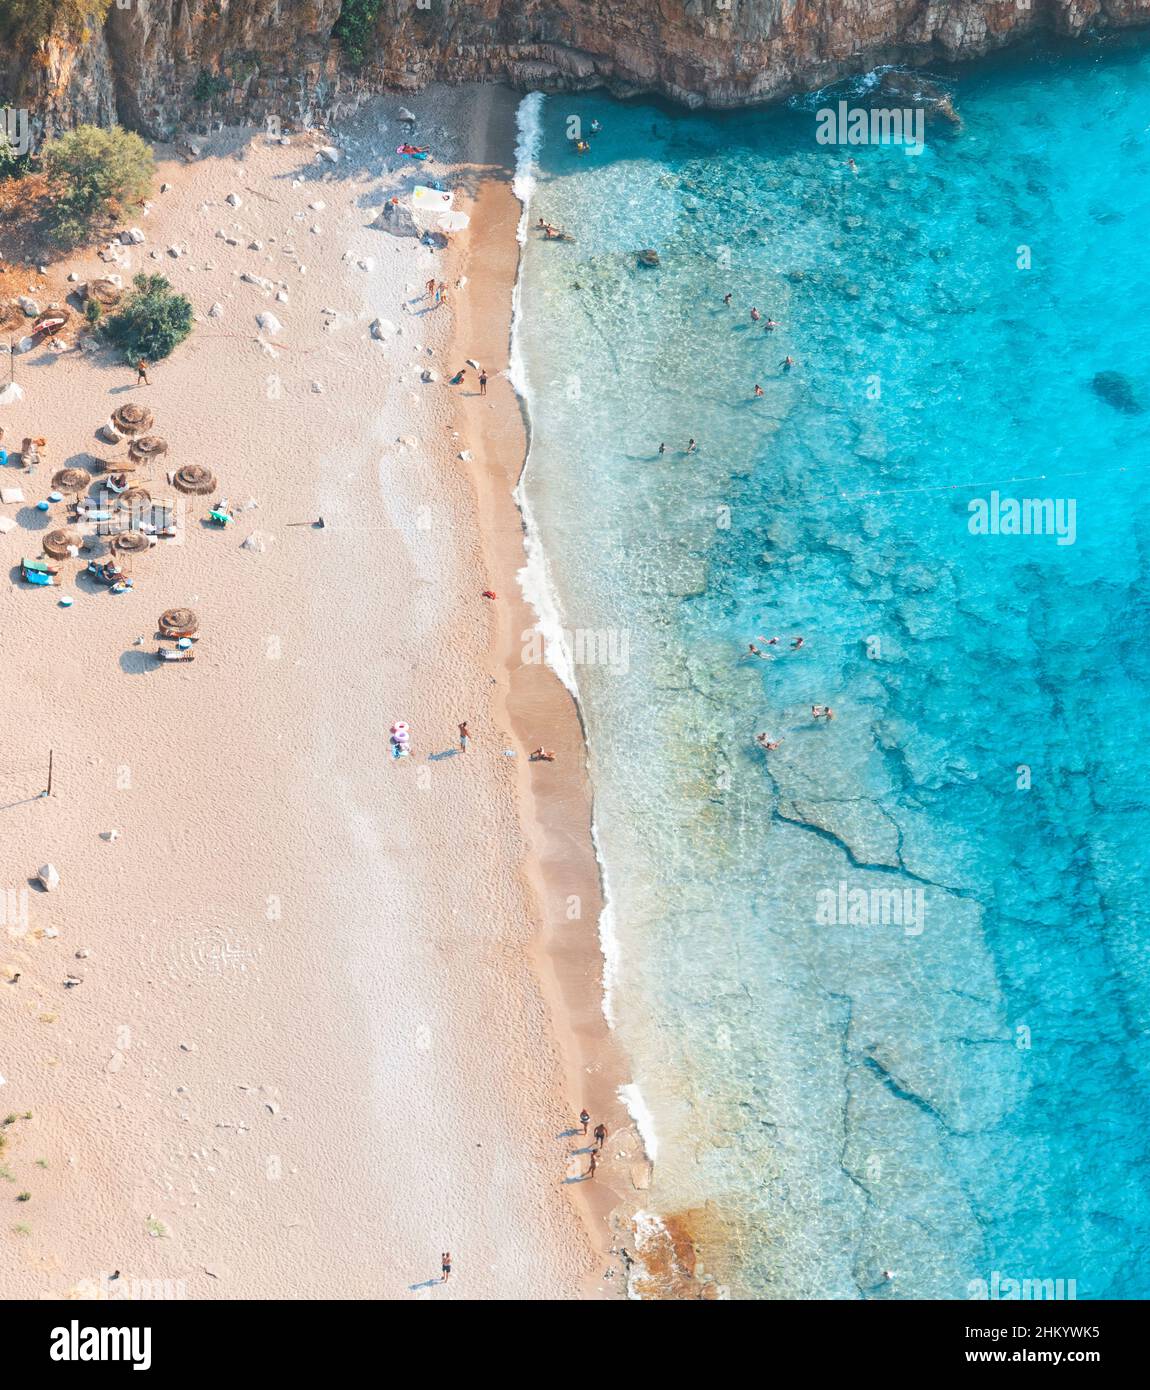 Vue aérienne sur la plage et les eaux turquoise de Butterfly Valley. Turquie. Banque D'Images